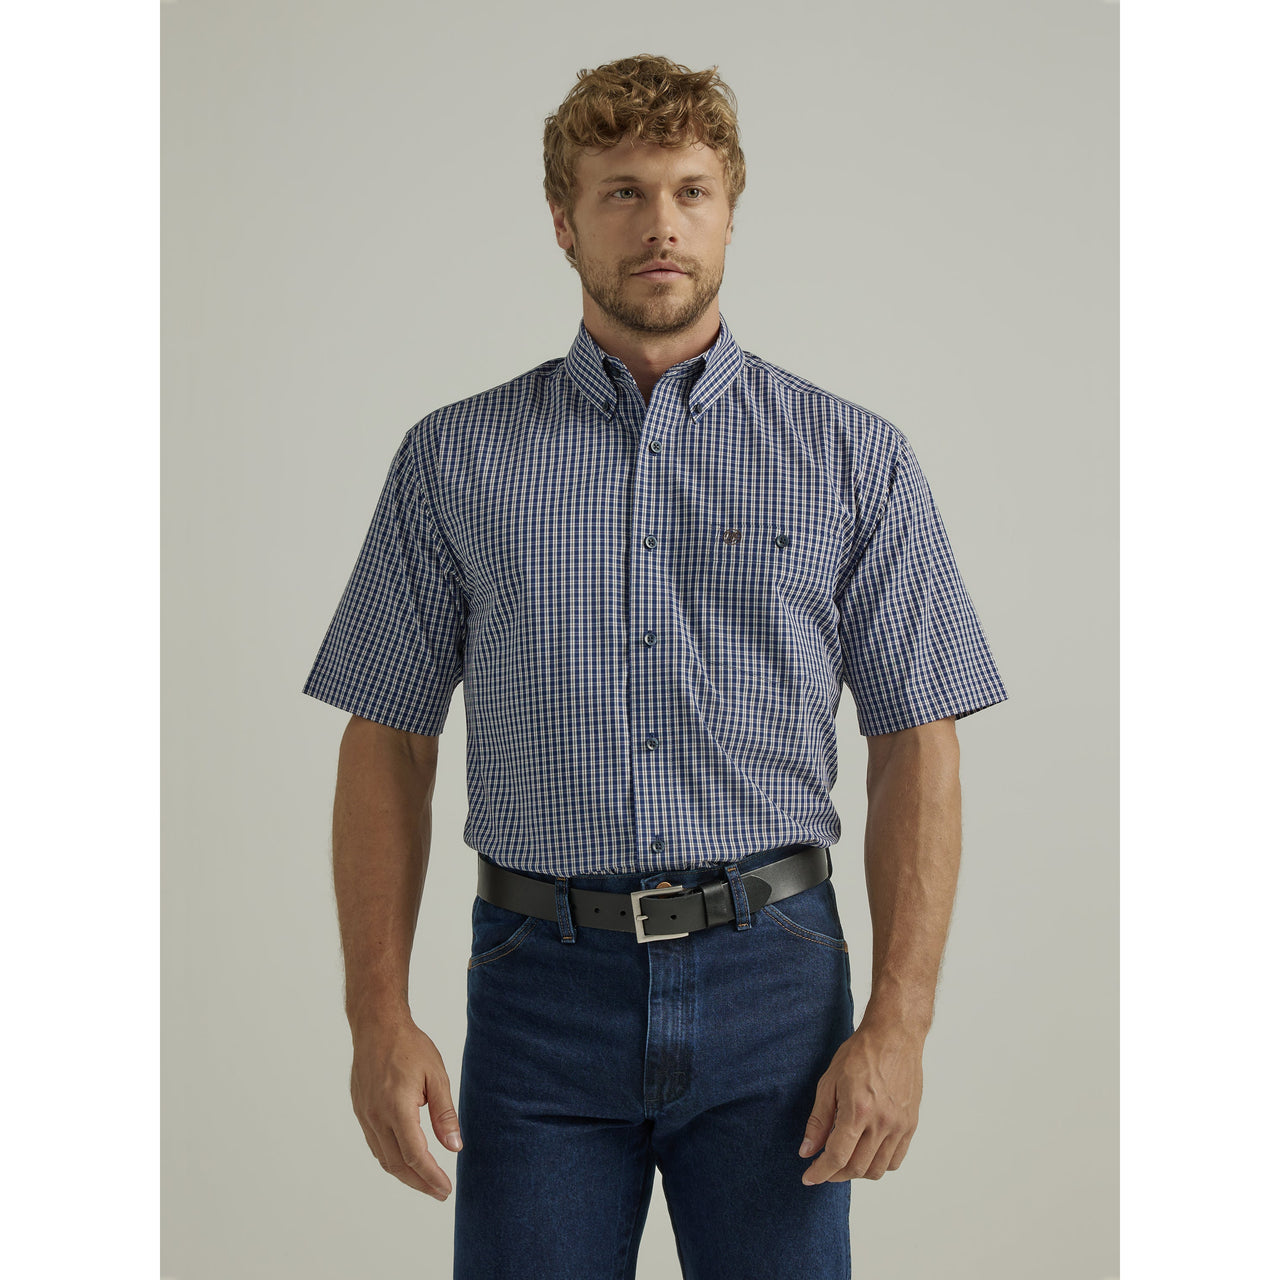 Wrangler Men's Wrinkle-Free Short Sleeve Shirt - Navy